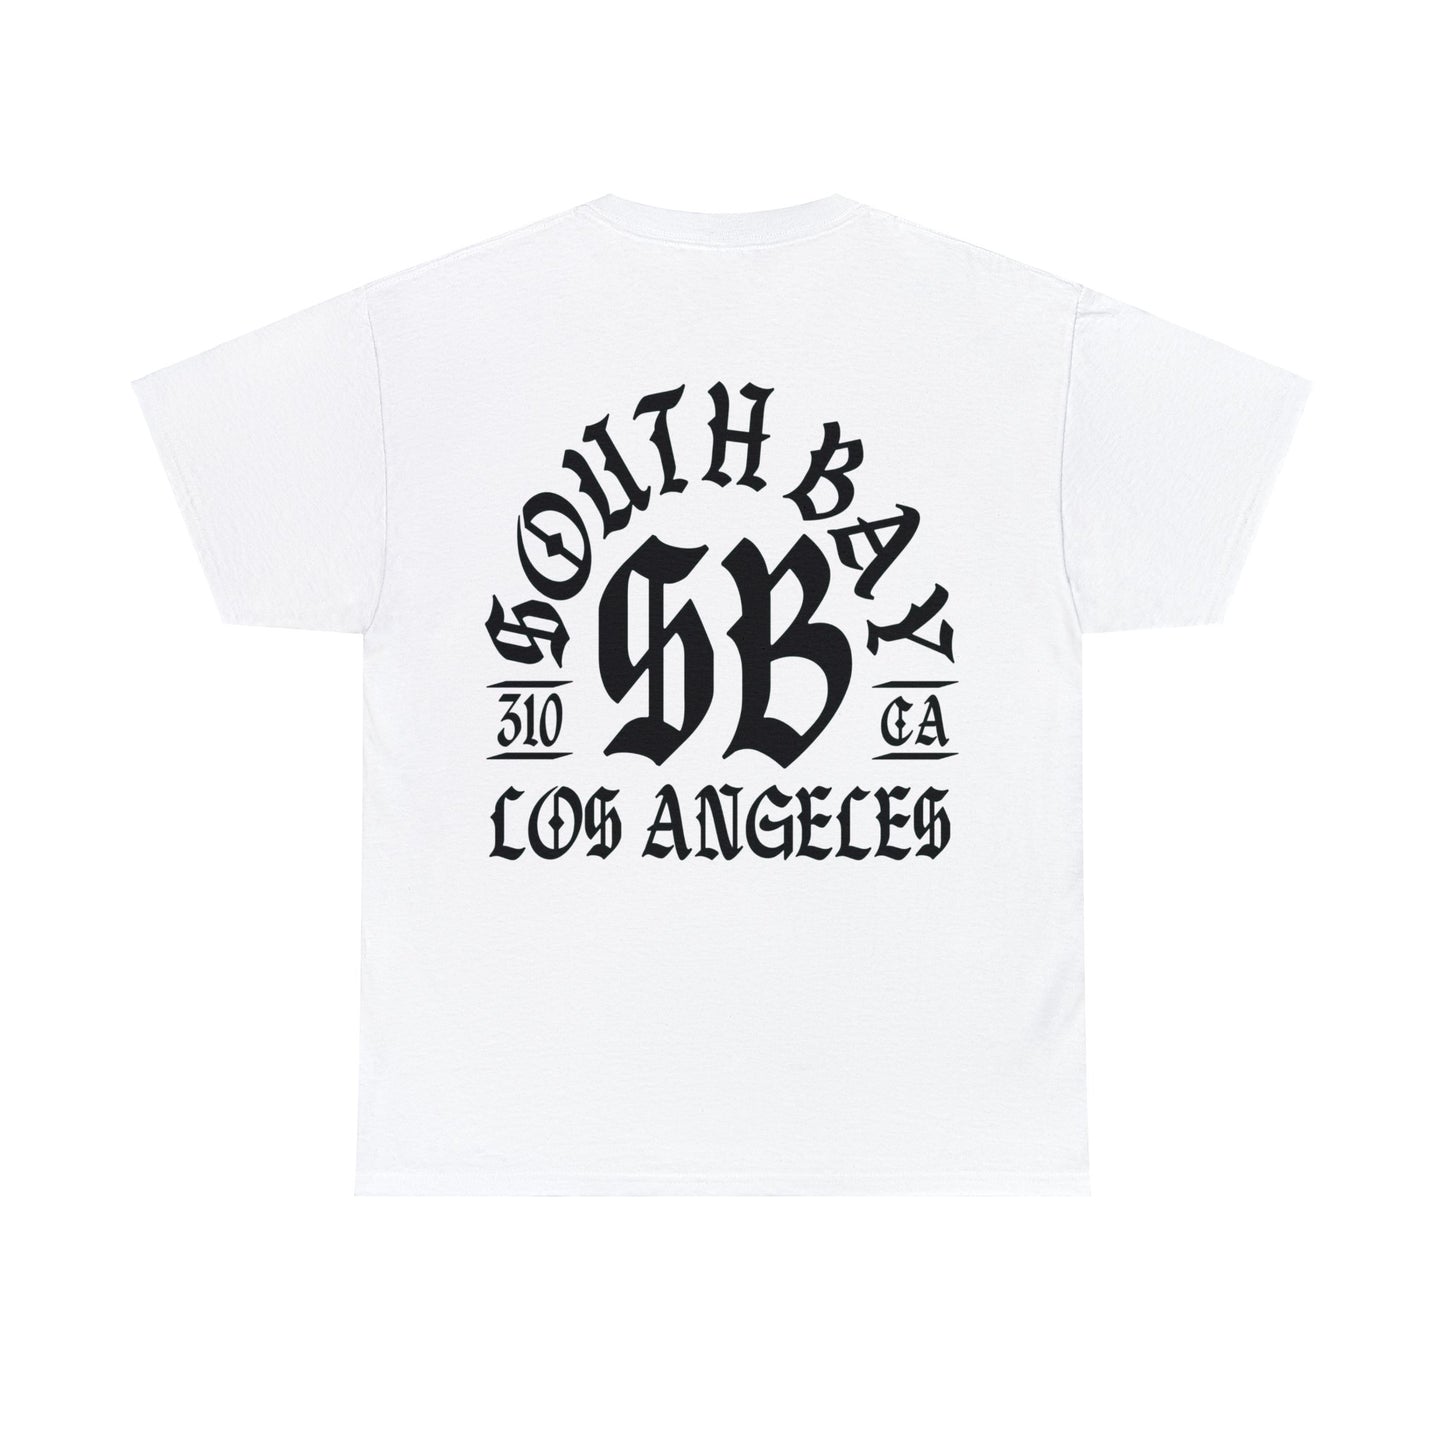 SOUTH BAY LOS ANGELES SHIRT